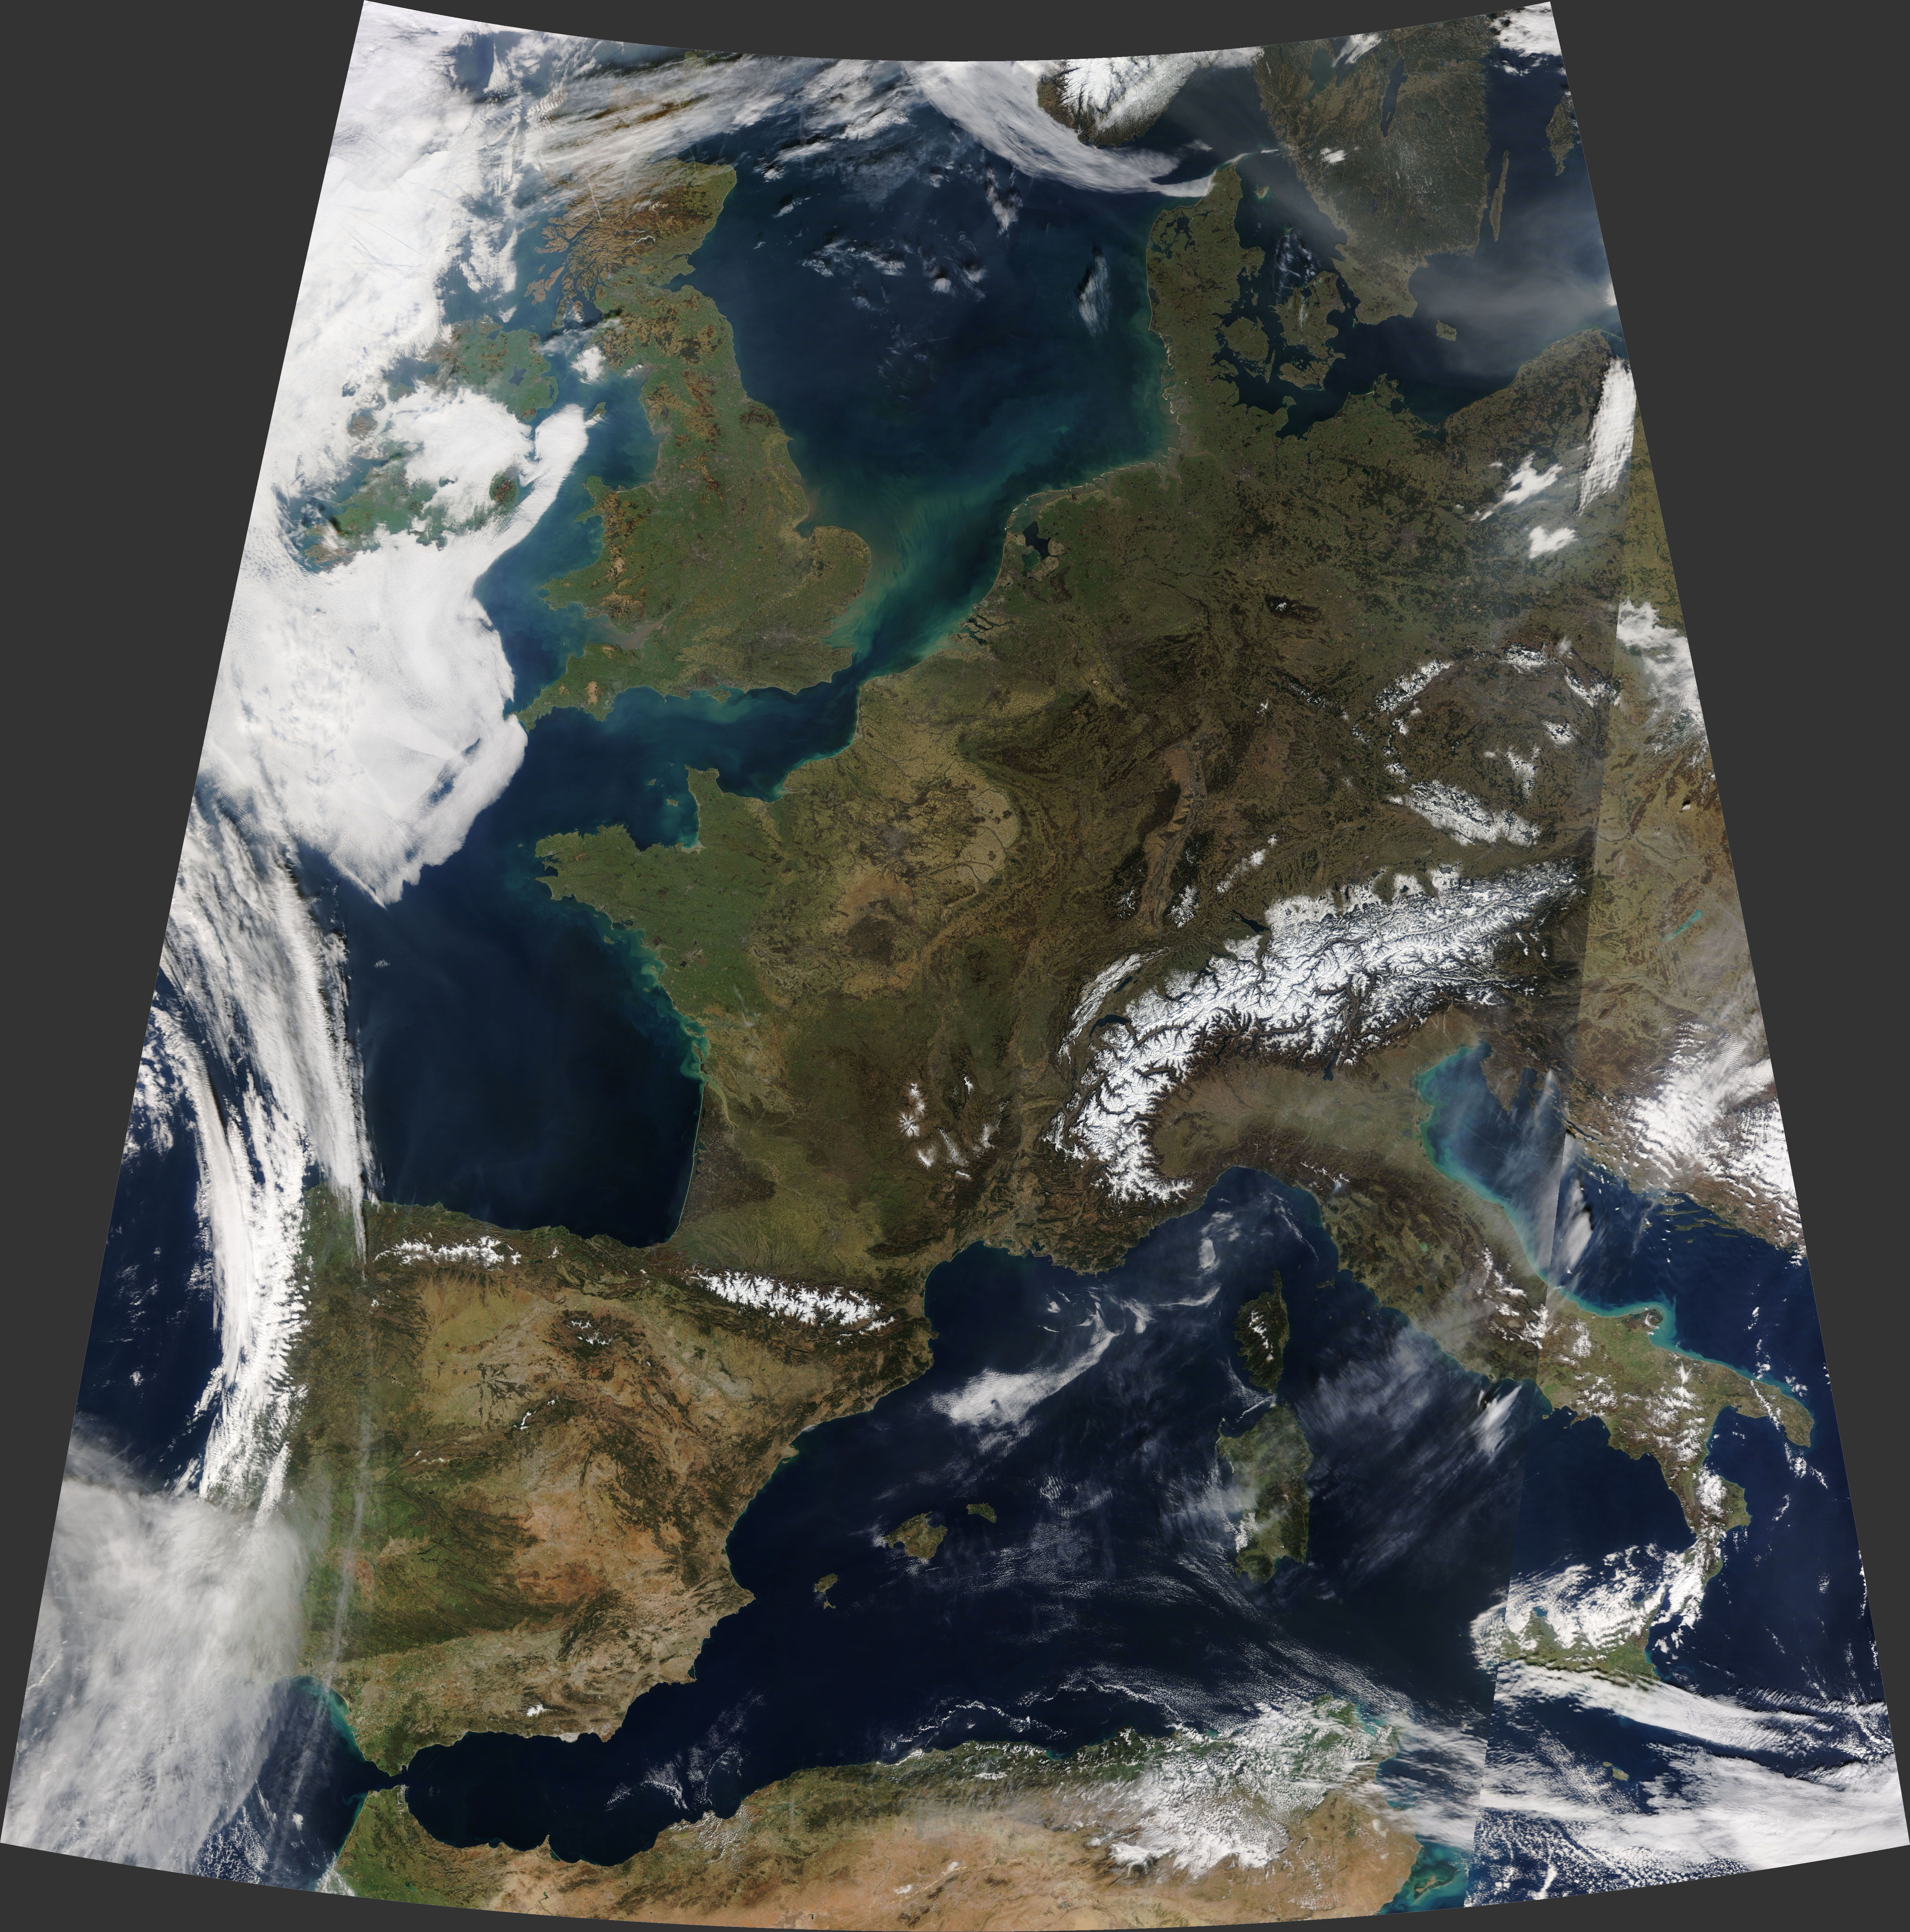 Las Espectaculares Imagenes De Una Inusual Europa Sin Nubes Captadas Desde El Espacio 1, Misterio y Ciencia en Planeta Incógnito: Revista web y podcast